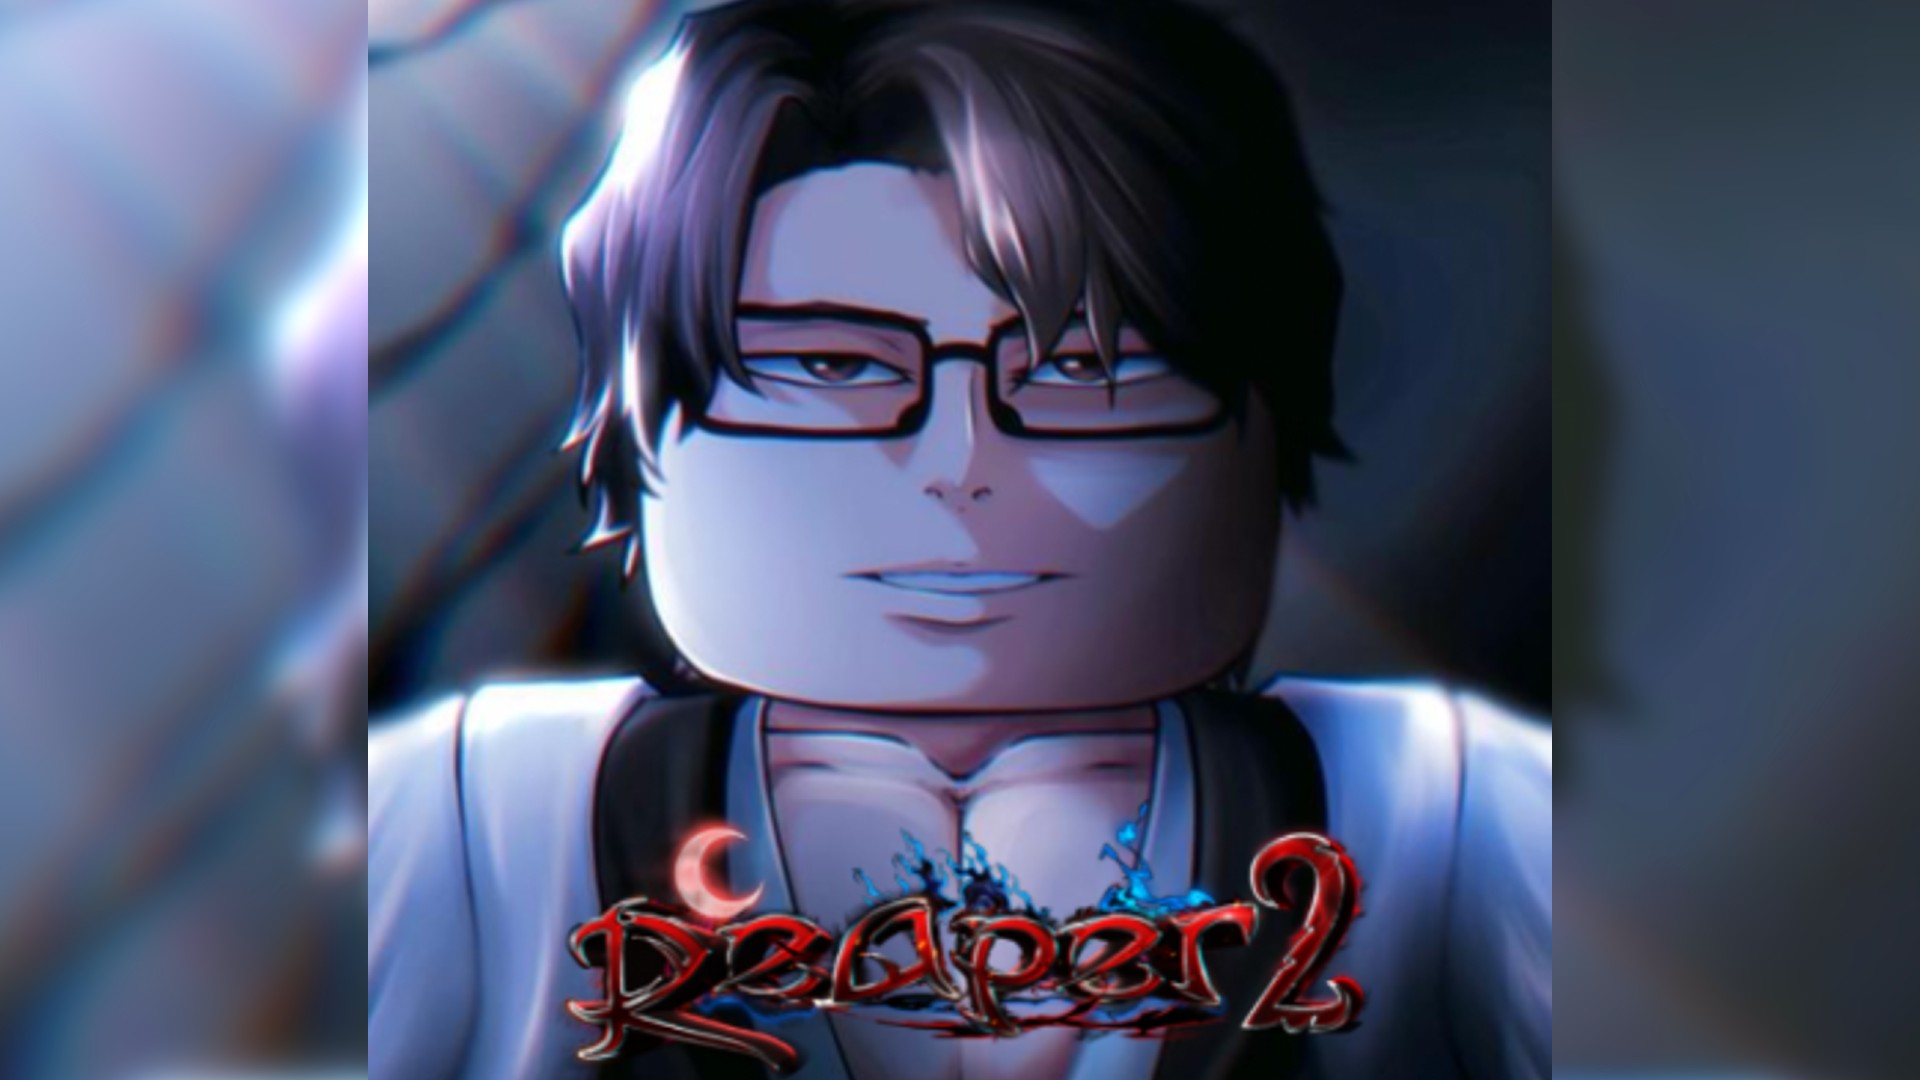 Reaper 2 Codes November 2022 [New Updated] – GamePlayerr